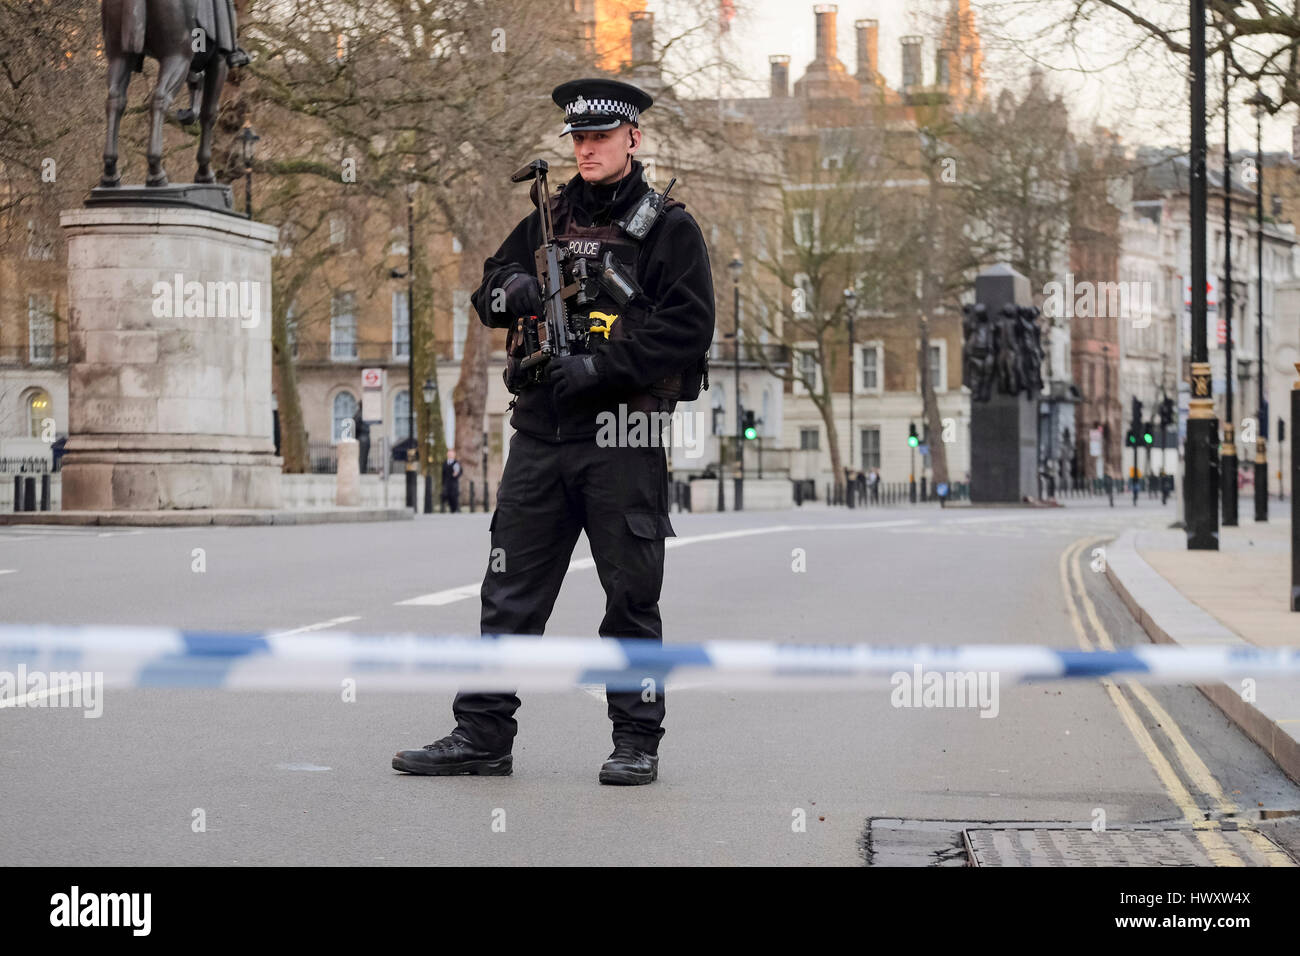 Un ufficiale metropolitano di armi da fuoco della polizia si trova a Whitehall, a seguito di un attacco terroristico al Palazzo di Westminster nel marzo 2017. Foto Stock